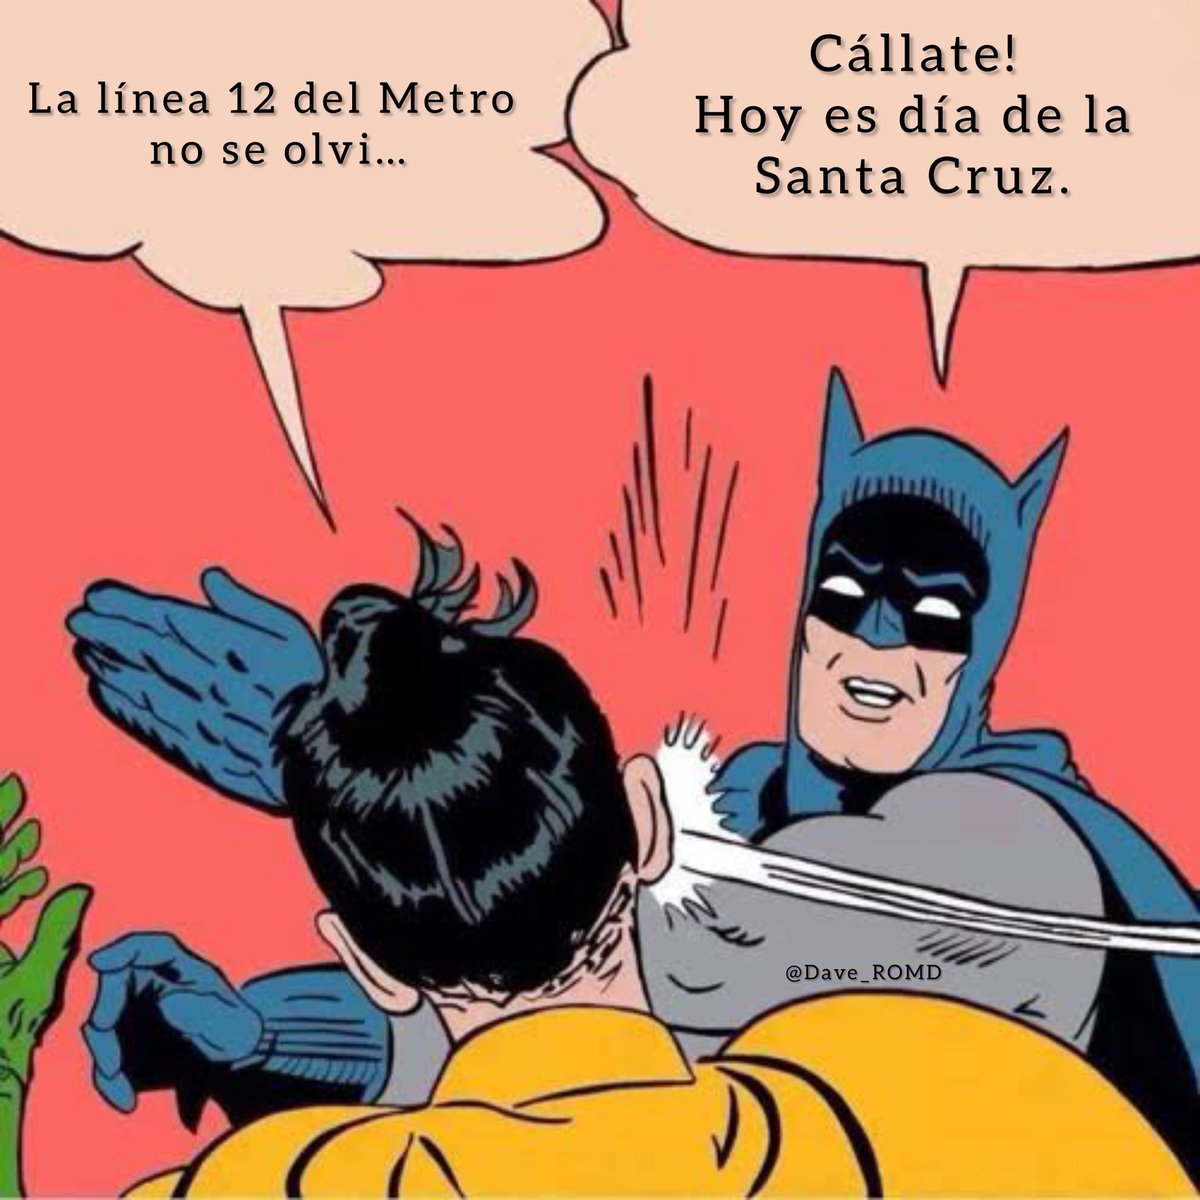 Hoy es el Día de la Santa Cruz, no de la línea 12. 

#Linea12NoSeOlvida 
#Linea12NiPerdonNiOlvido 
#Pemex 
#DiaDeLaCruz 
#3DeMayoNoSeOlvida 
#4taTransformacion